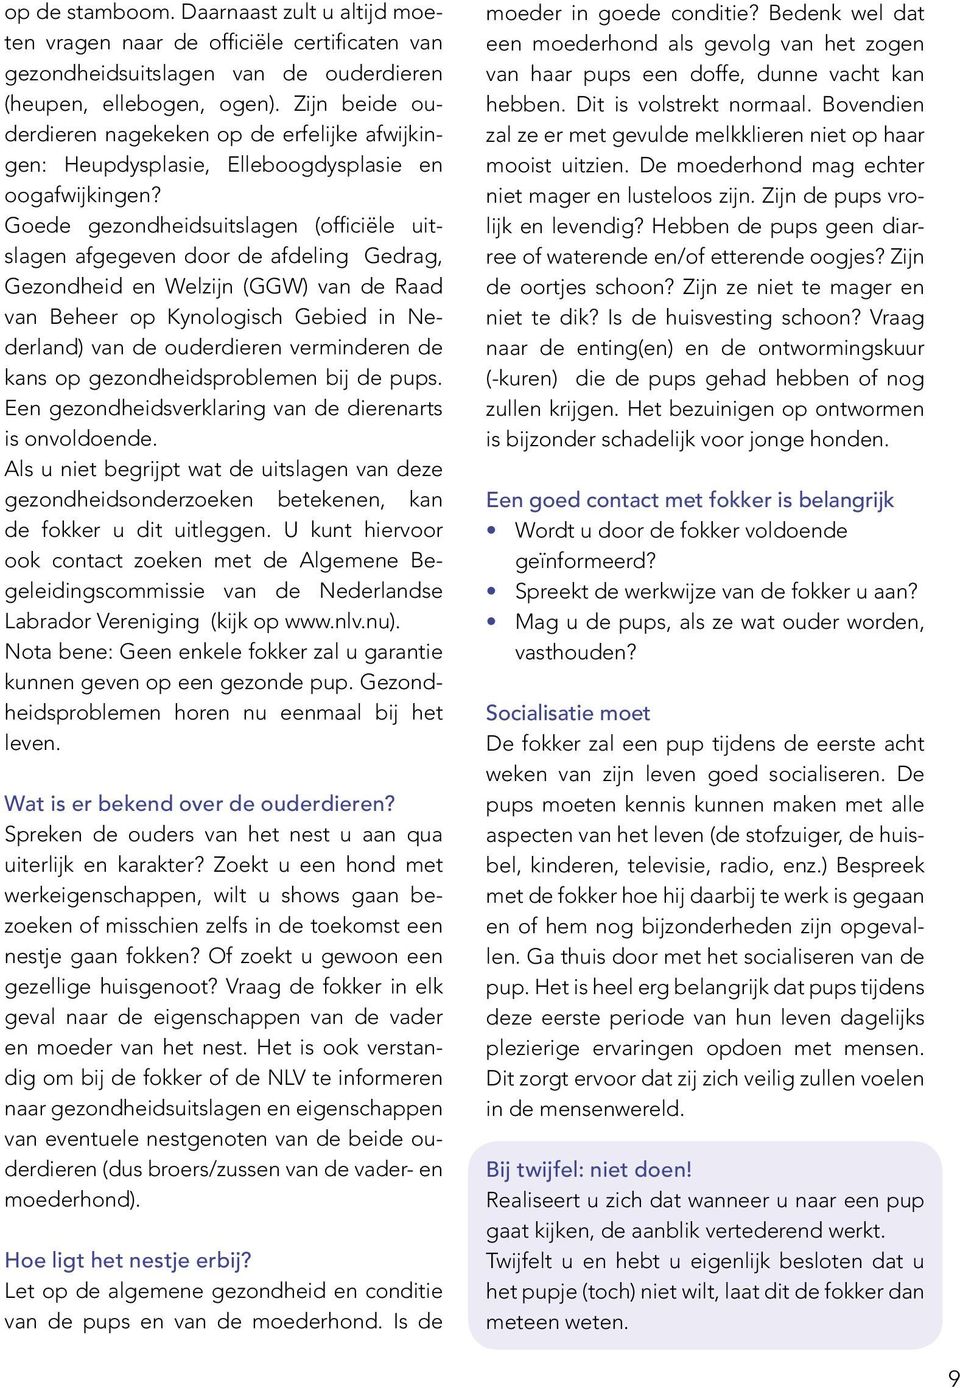 Goede gezondheidsuitslagen (officiële uitslagen afgegeven door de afdeling Gedrag, Gezondheid en Welzijn (GGW) van de Raad van Beheer op Kynologisch Gebied in Nederland) van de ouderdieren